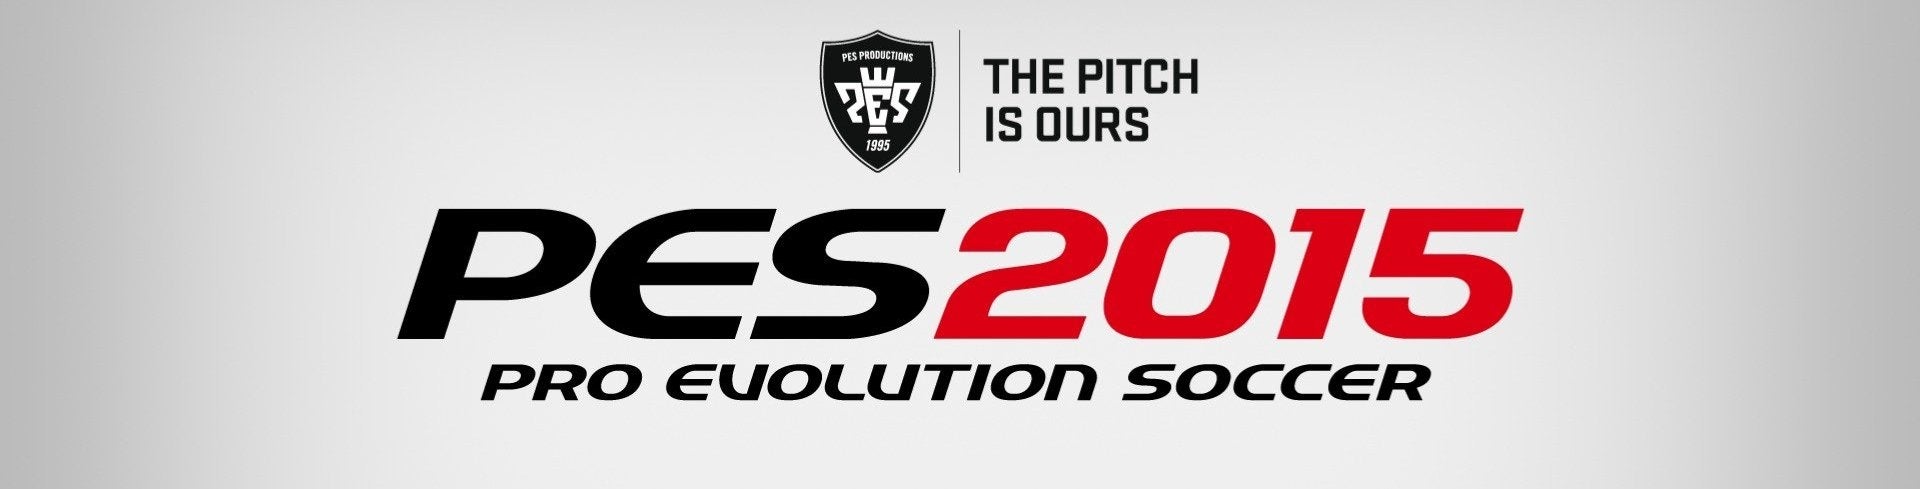 Afbeeldingen van Pro Evolution Soccer 2015: 1080p op PlayStation 4